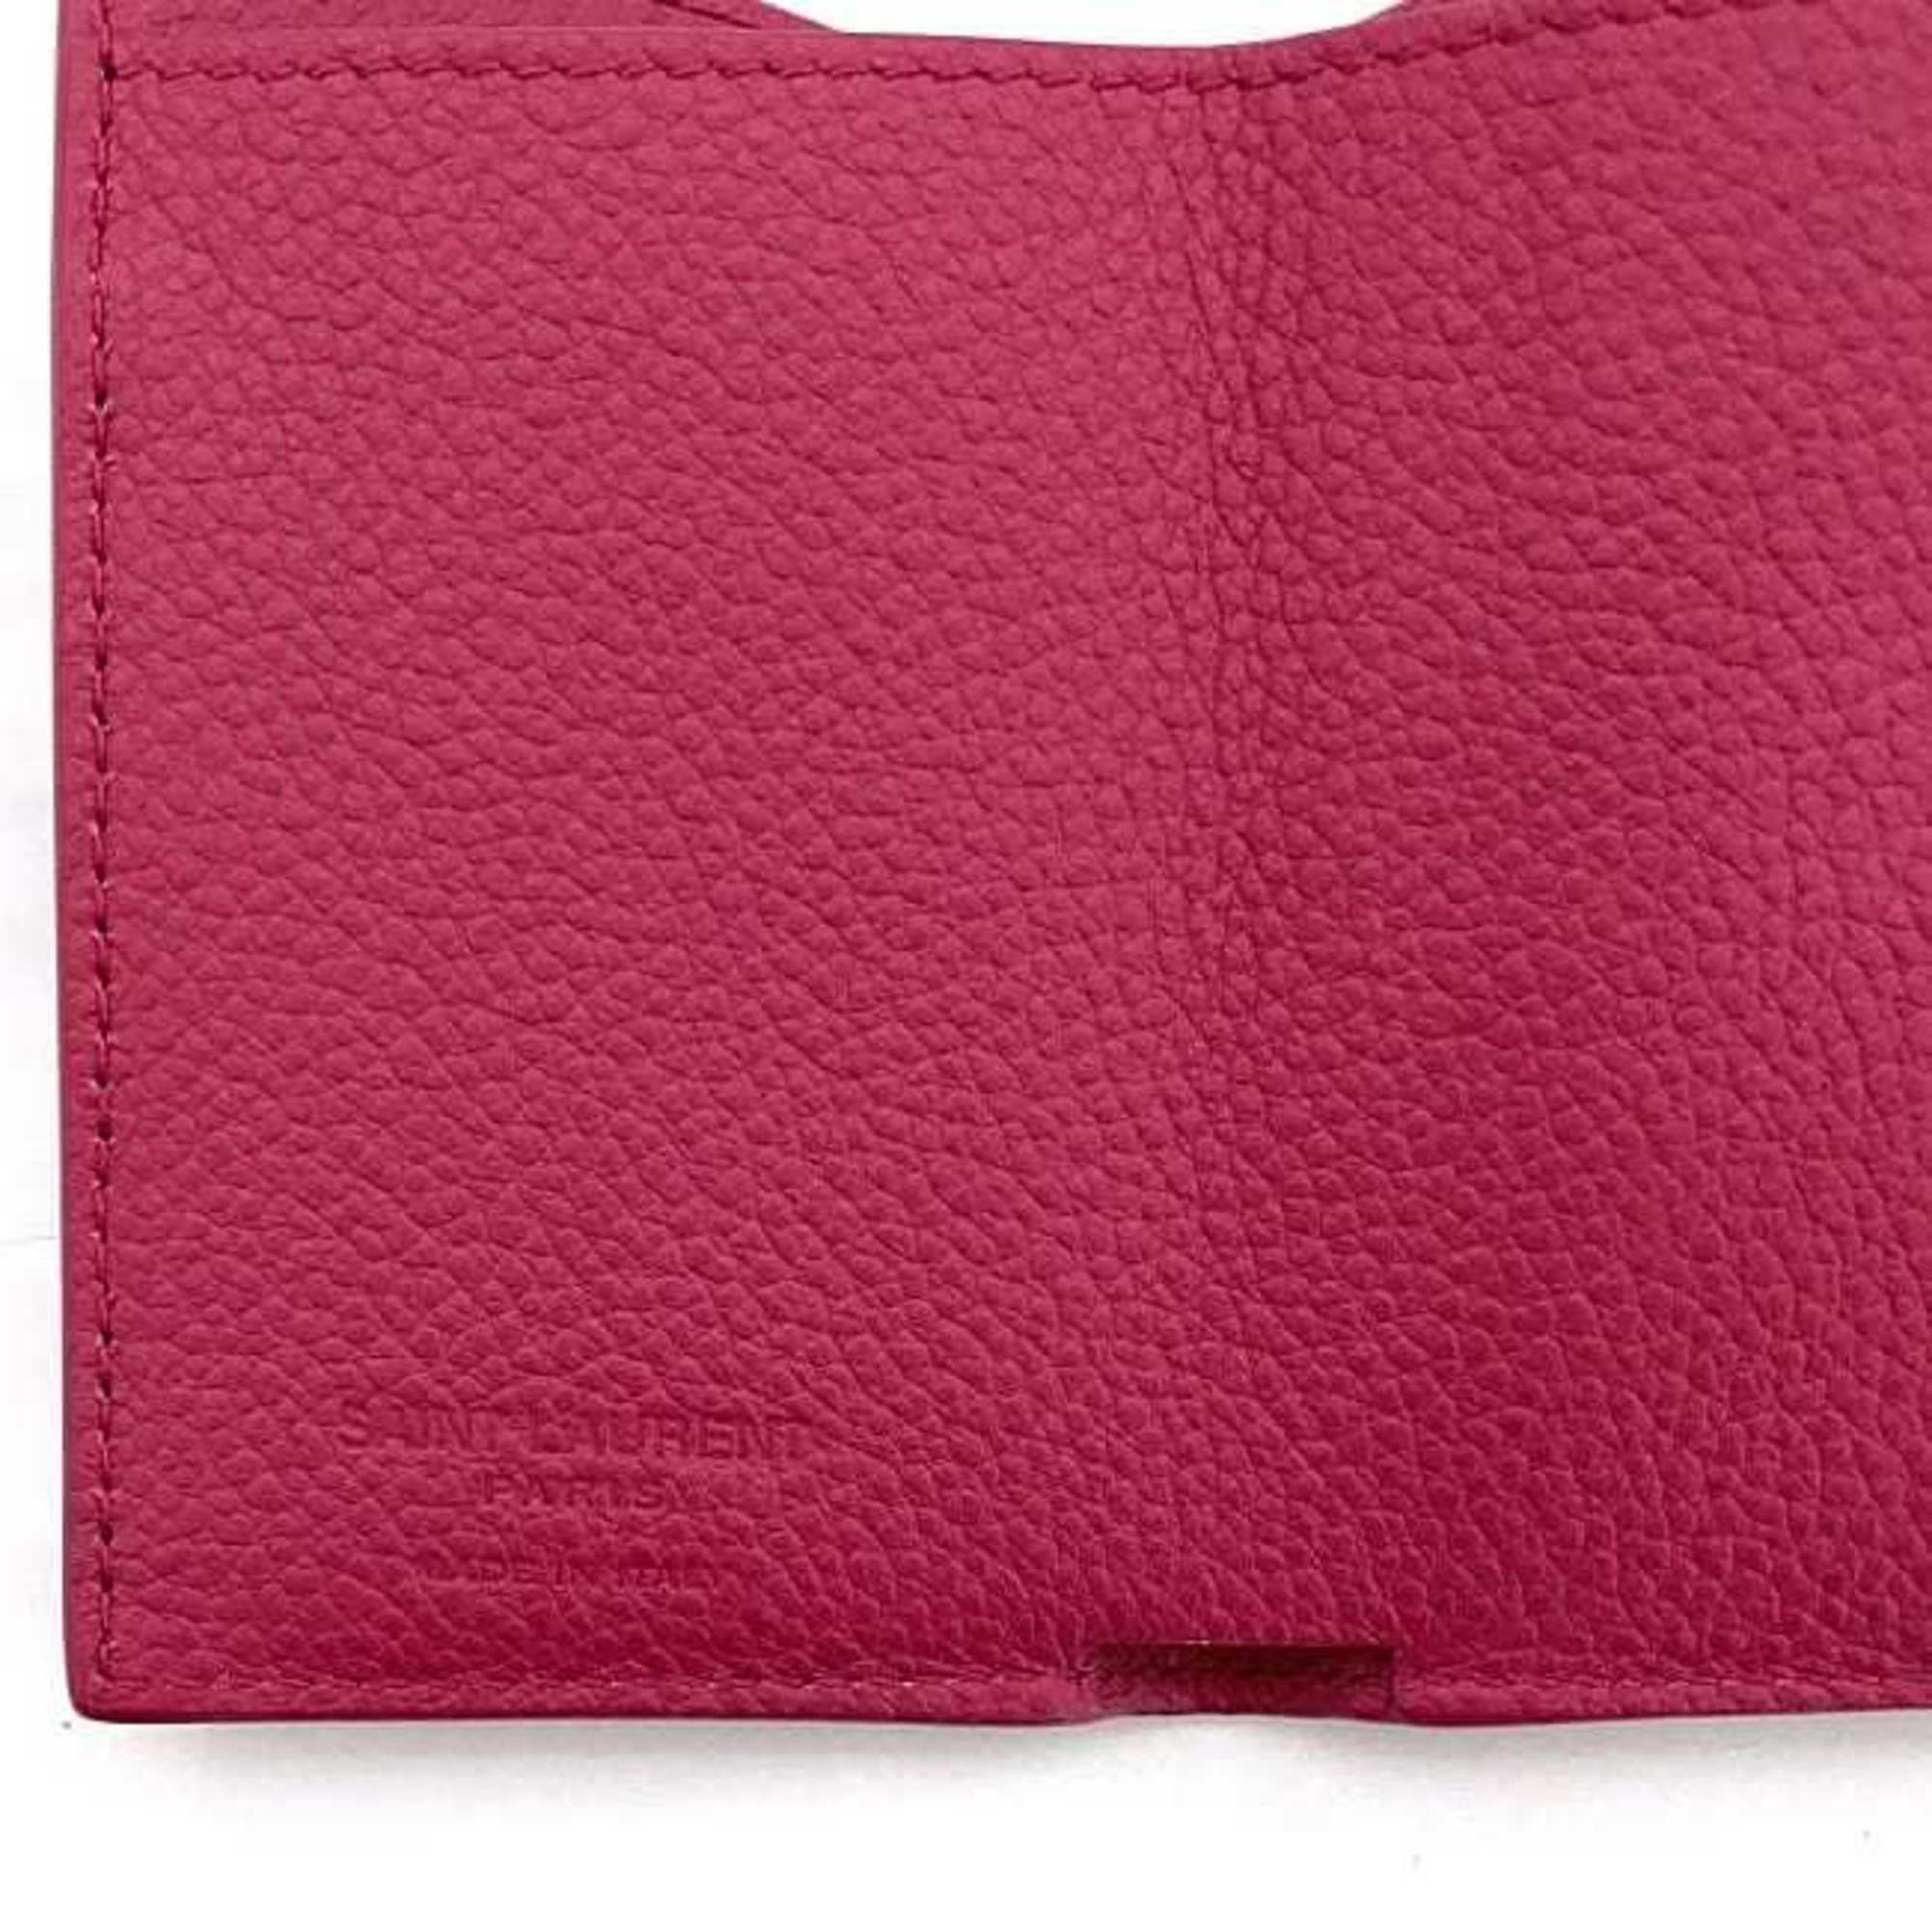 Saint Laurent Trifold Wallet Pink 459784 B680J 5619 Grain Leather SAINT LAURENT Women's